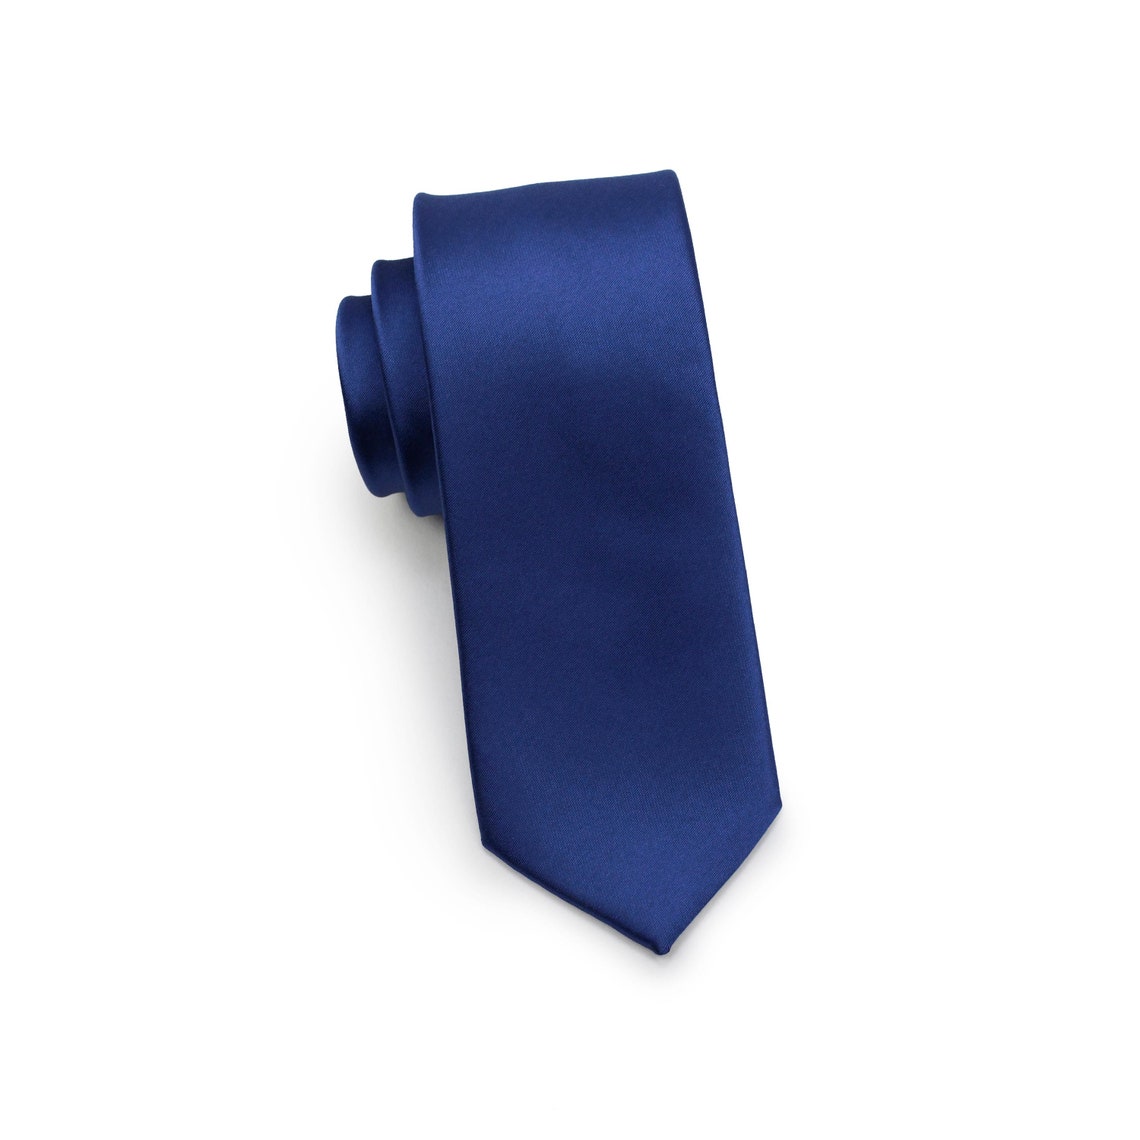 Royal Blue Tie Men's Tie in Solid Royal Blue Solid - Etsy